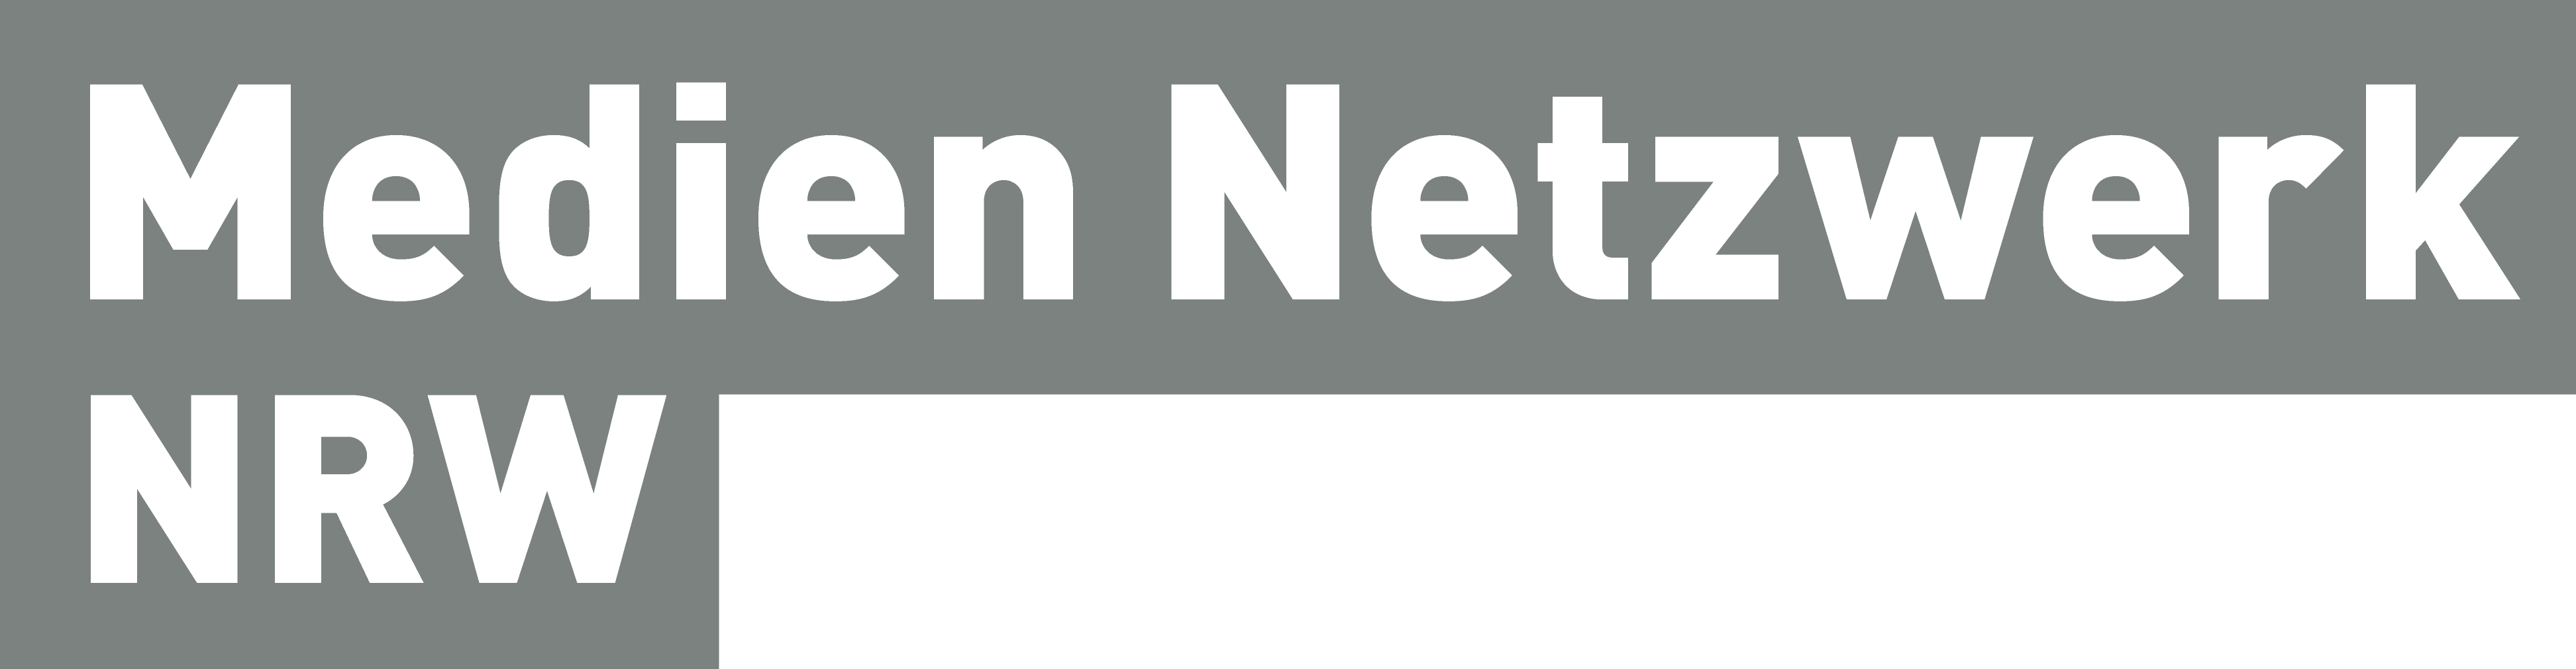 Mediennetzwerk NRW